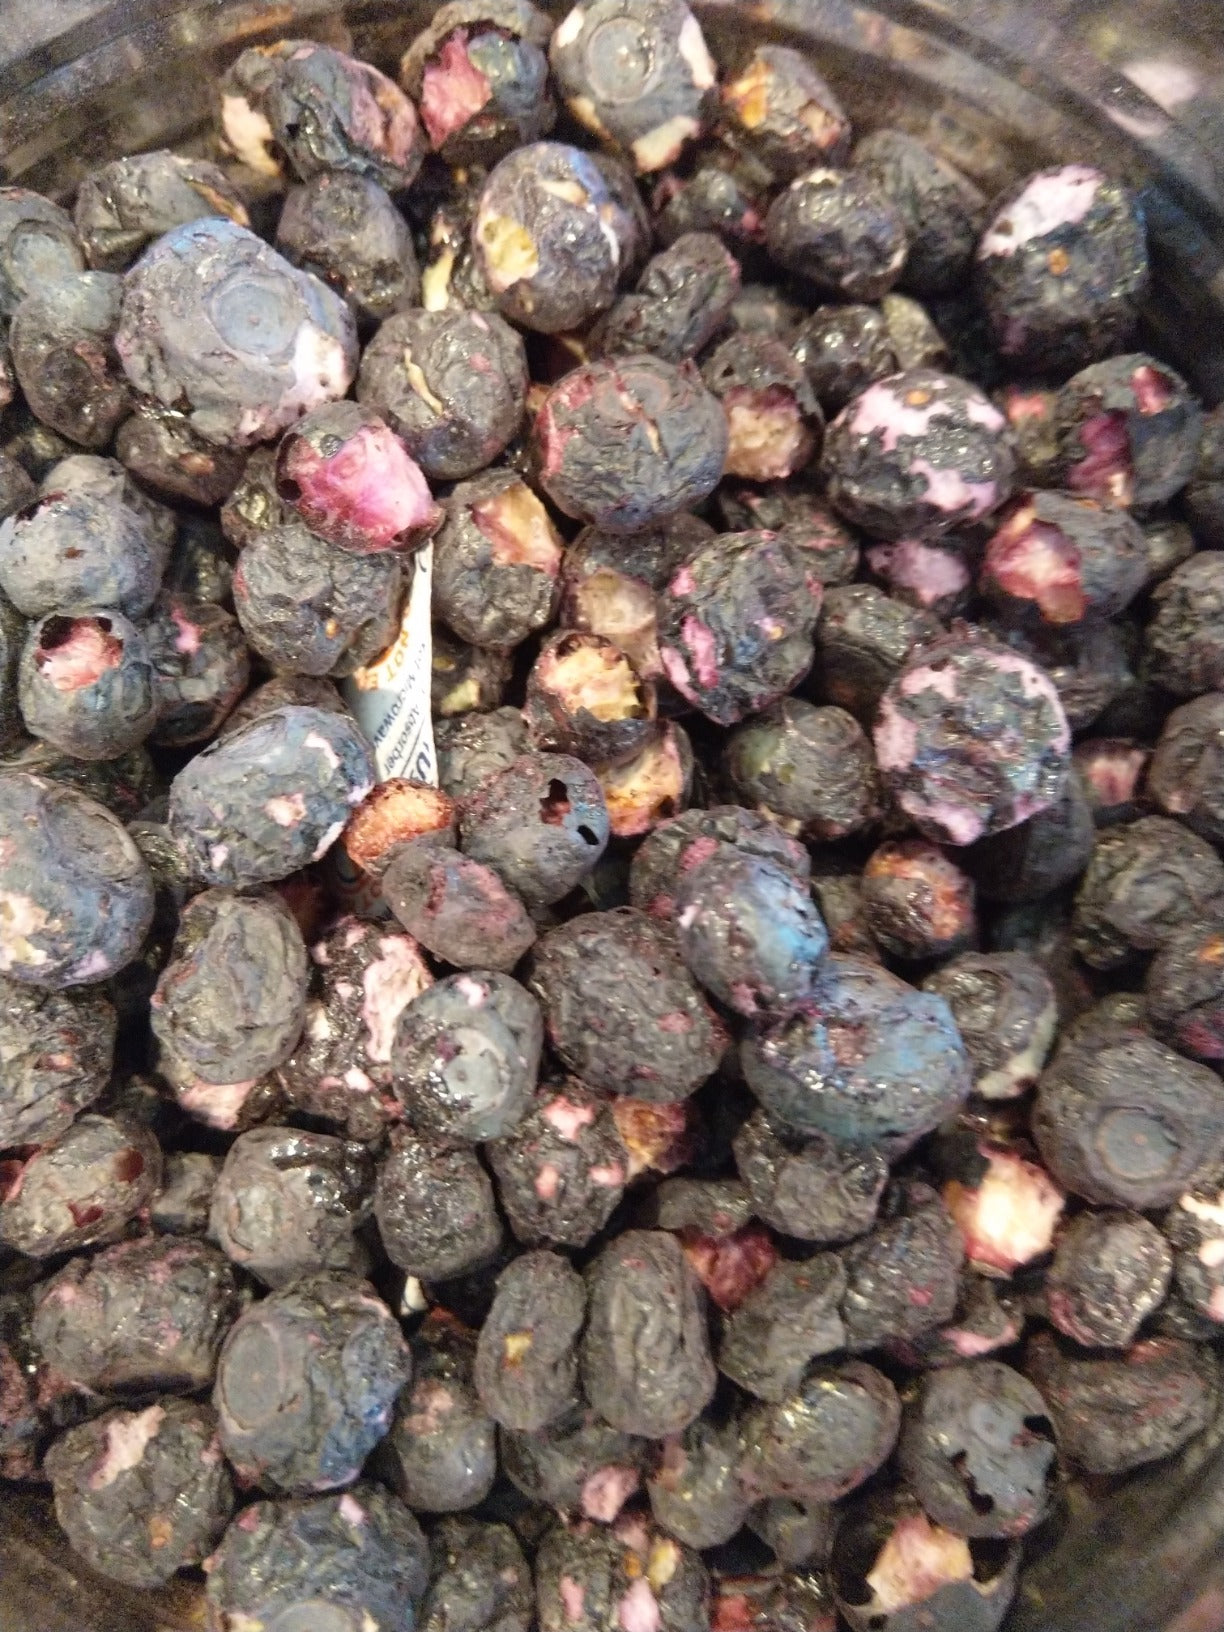 Augason Farms Freeze Dried Whole Blueberries, 12 Oz